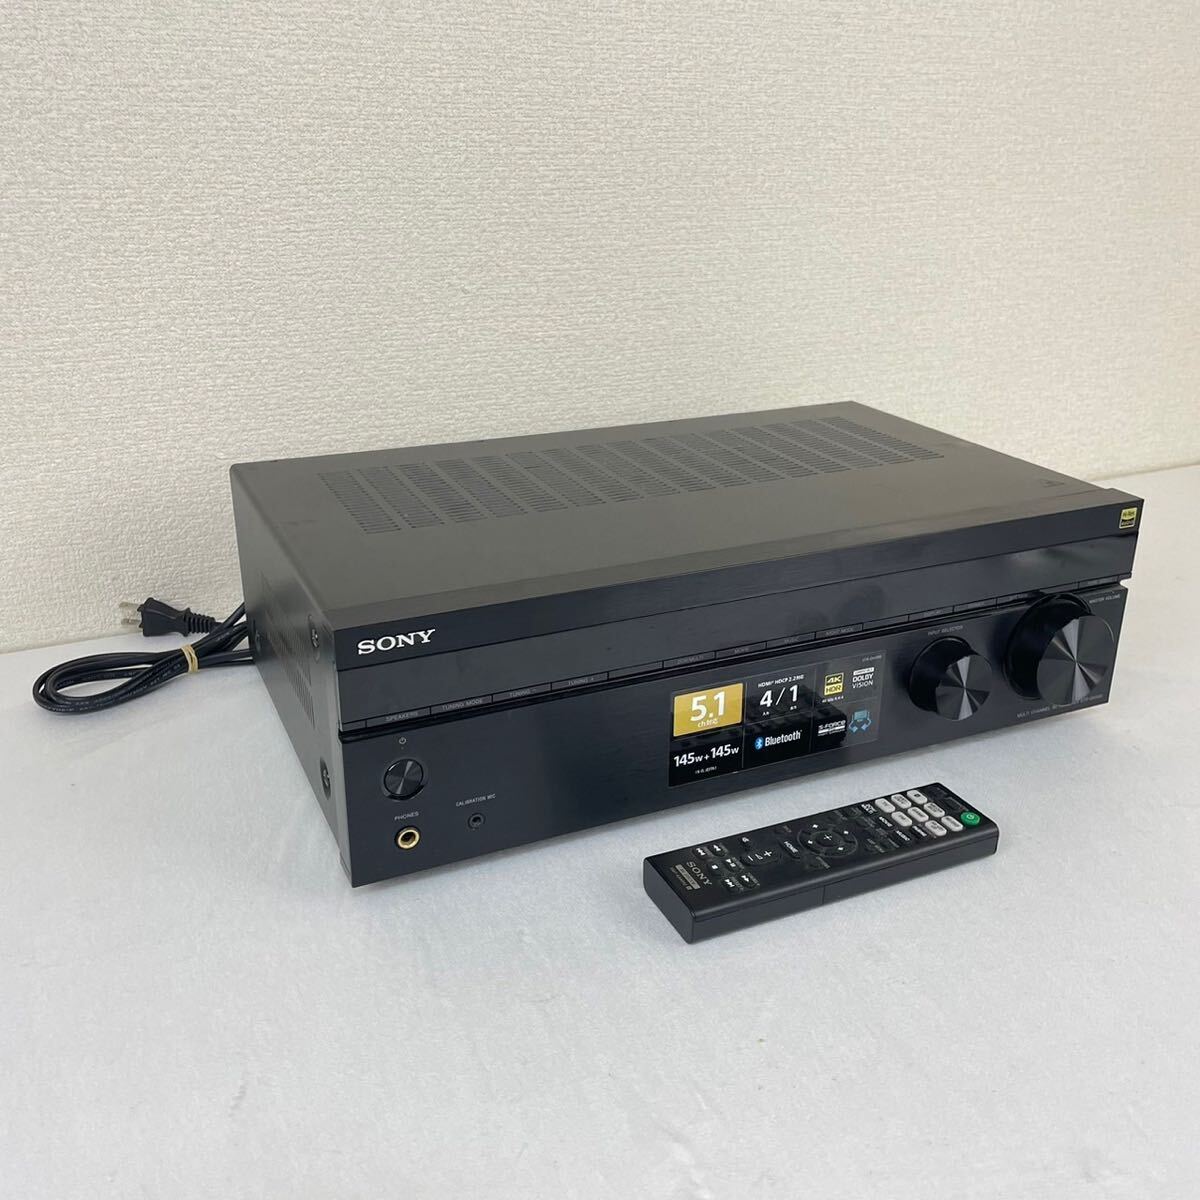 SONY Sony STR-DH590 multi channel Integrate amplifier AV amplifier 